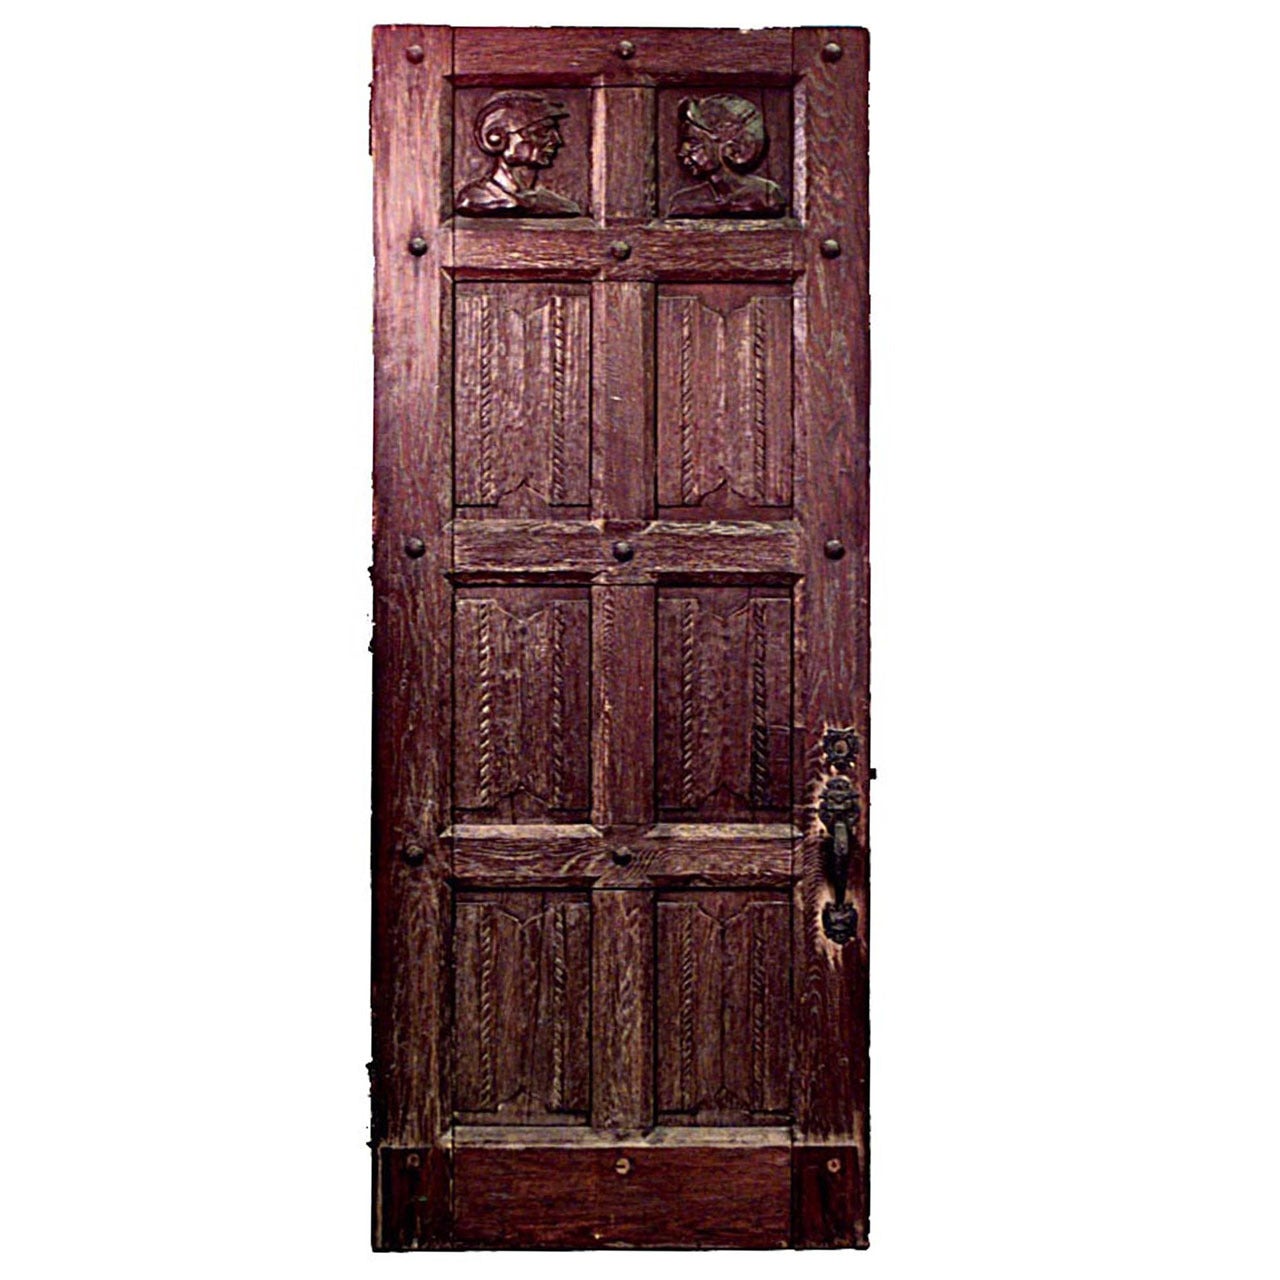 Englische Renaissance-Revival-Tür aus geschnitzter Eiche